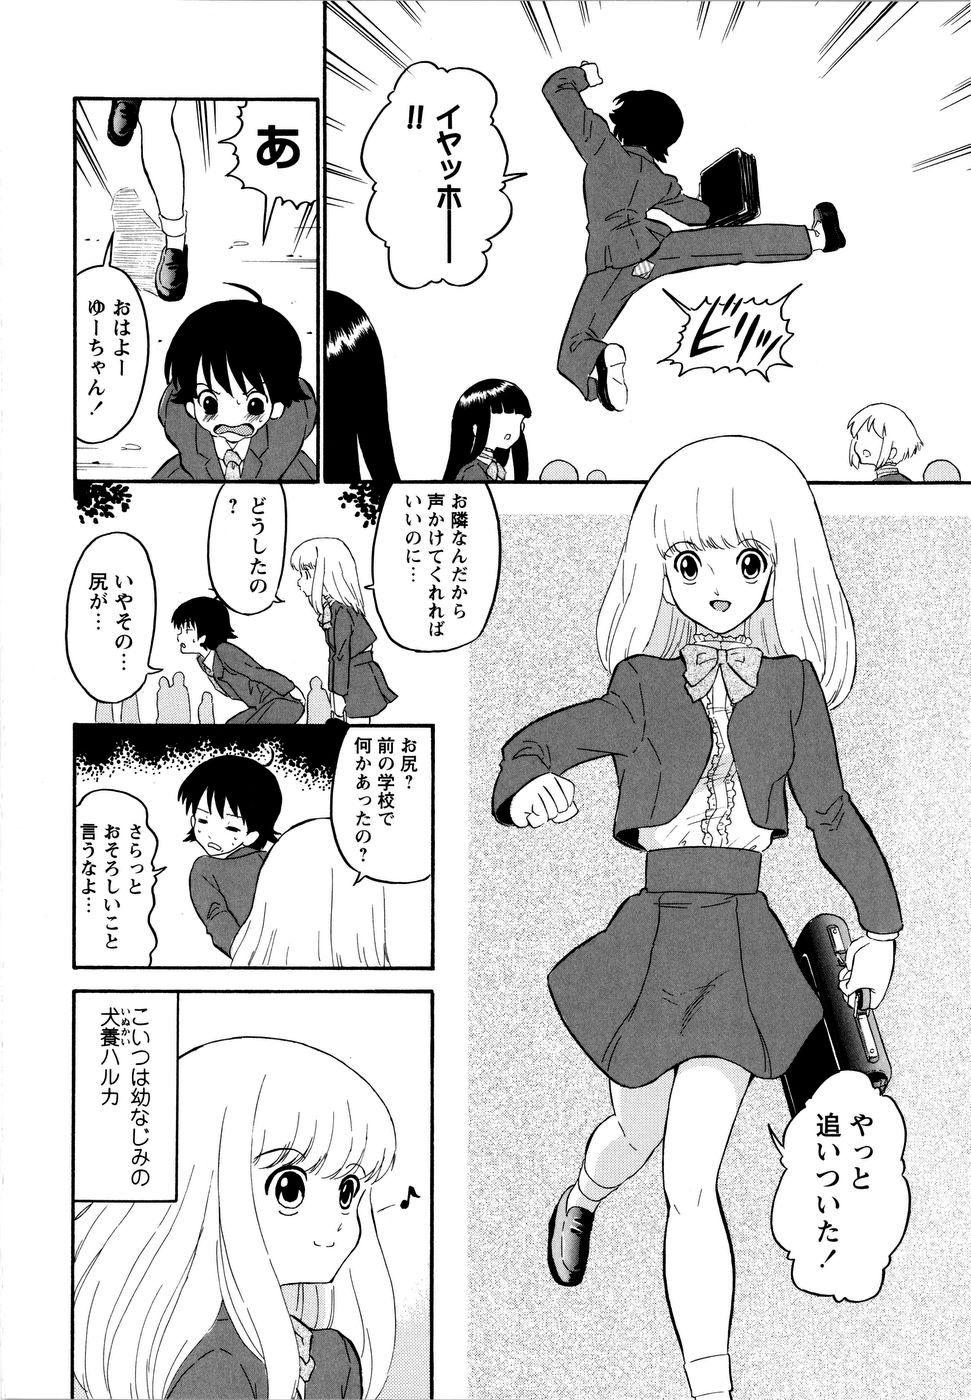 Assfingering Haruka 69 Volume 1 Best - Page 11